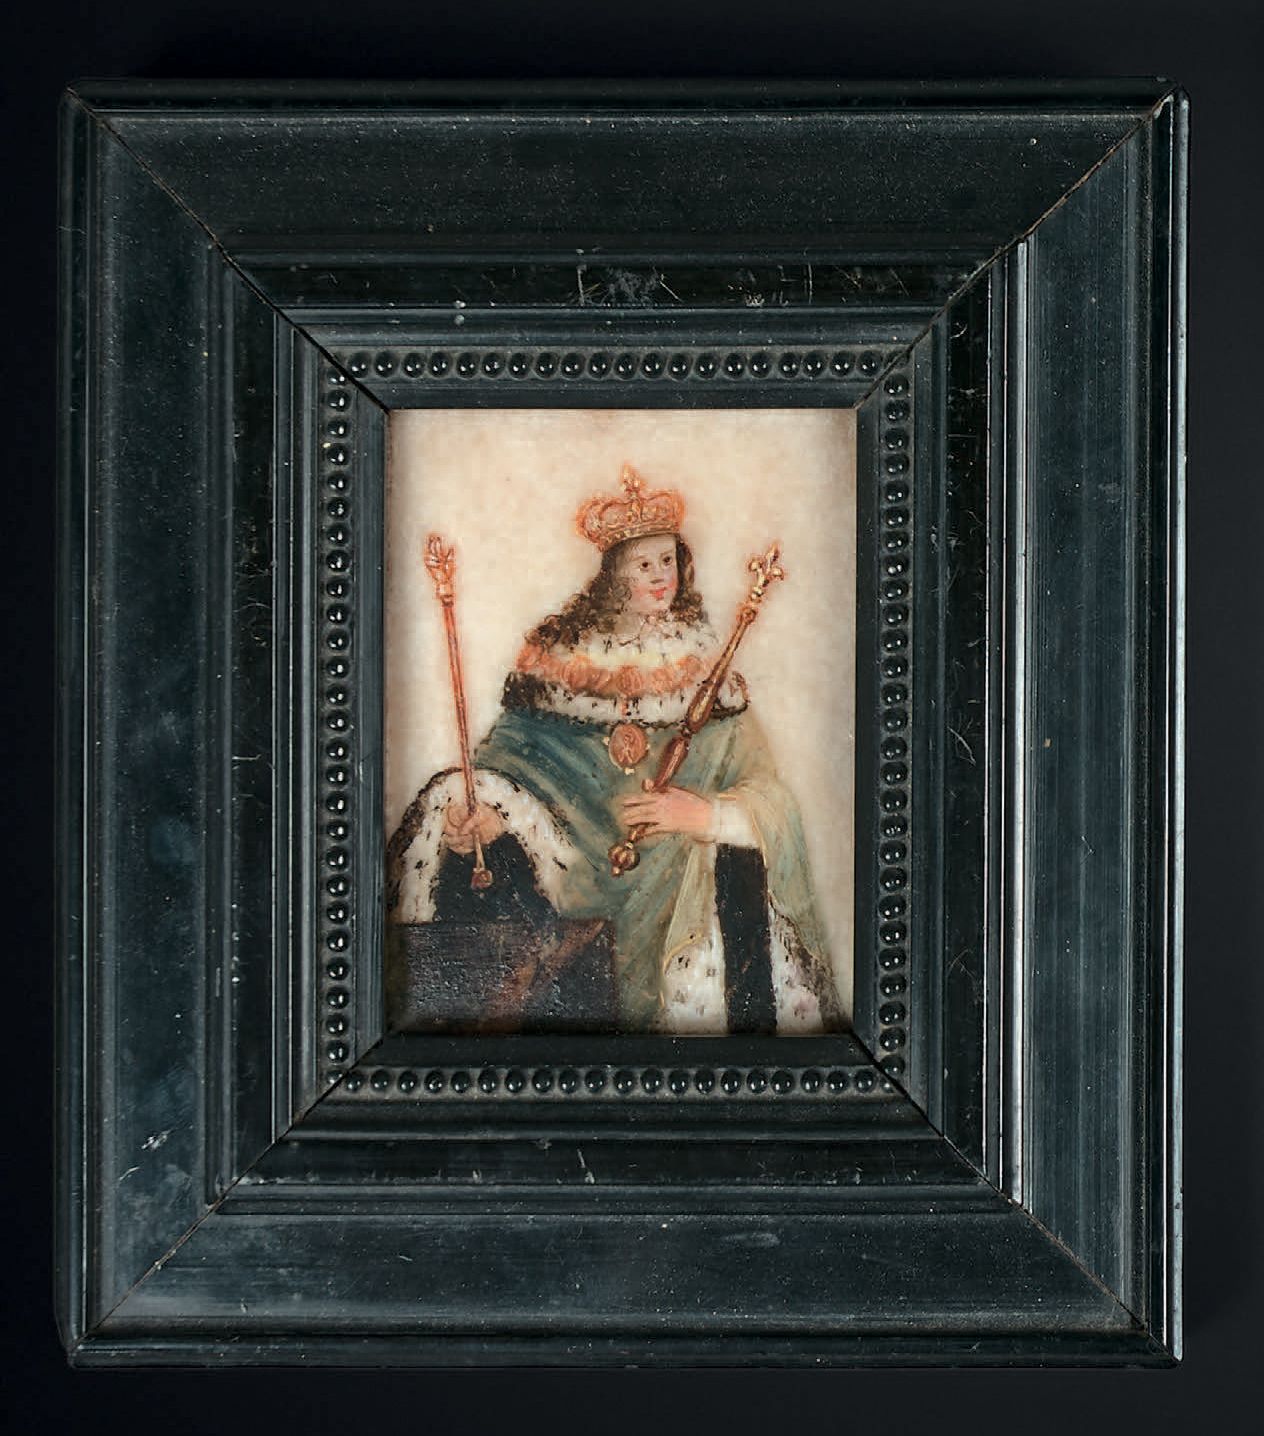 TRAVAIL FRANÇAIS VERS 1650 穿着加冕服的年轻国王路易十四的肖像
大理石上的微型画
高8.5厘米-宽6.2厘米